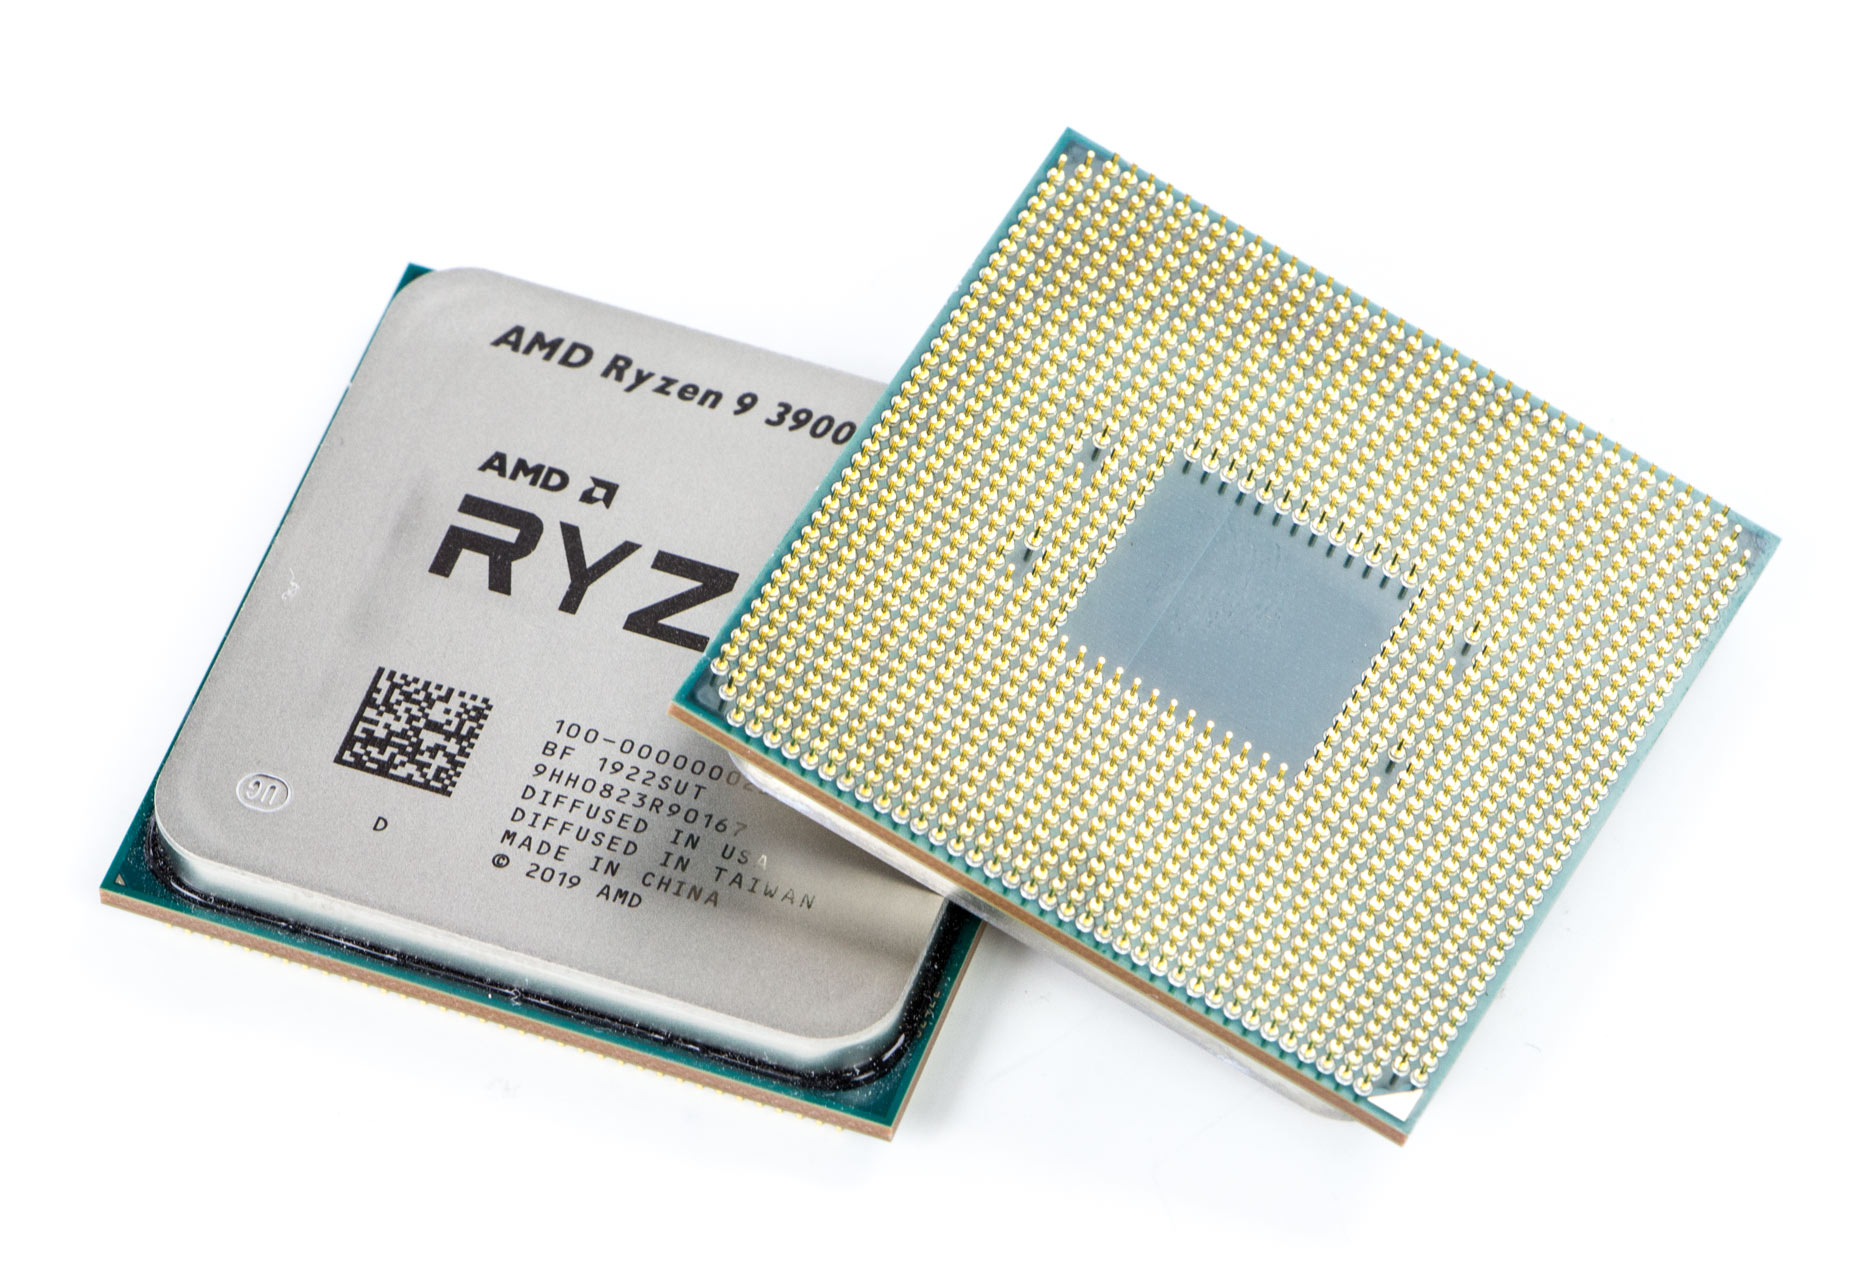 9 3900x купить. Ryzen 9 3900x. Процессор Ryzen 9 3900x. AMD Ryzen 9 3900x OEM. Процессор Risen 9.